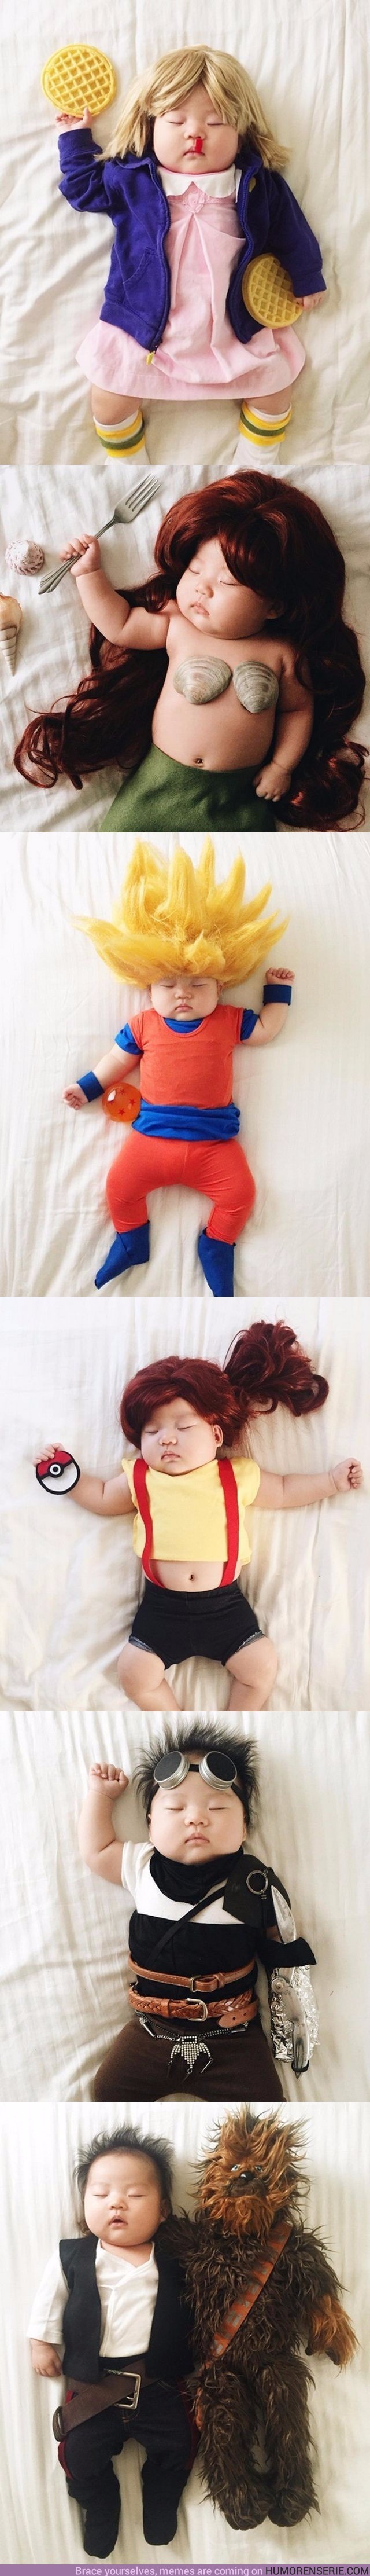 4488 - Este bebé hace los mejores cosplays, y lo hace durmiendo